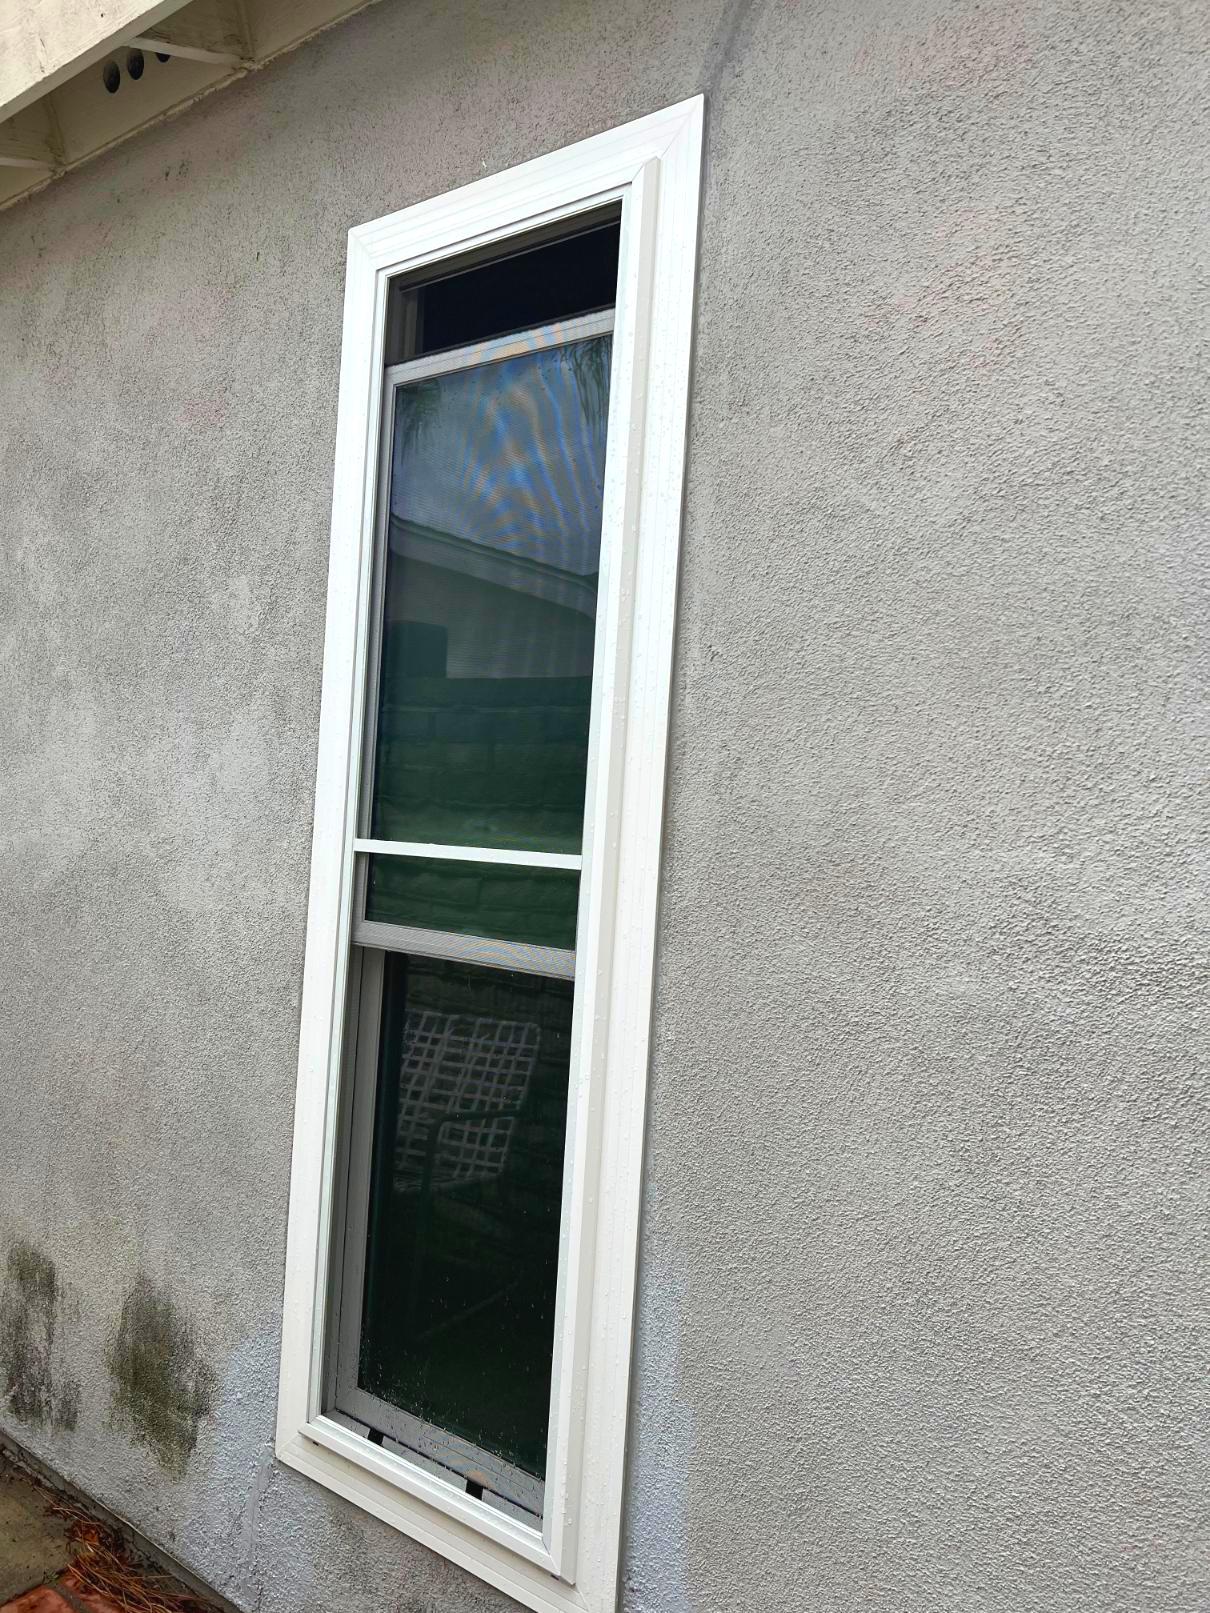 Window & Patio Door Installation Project in Irvine, CA